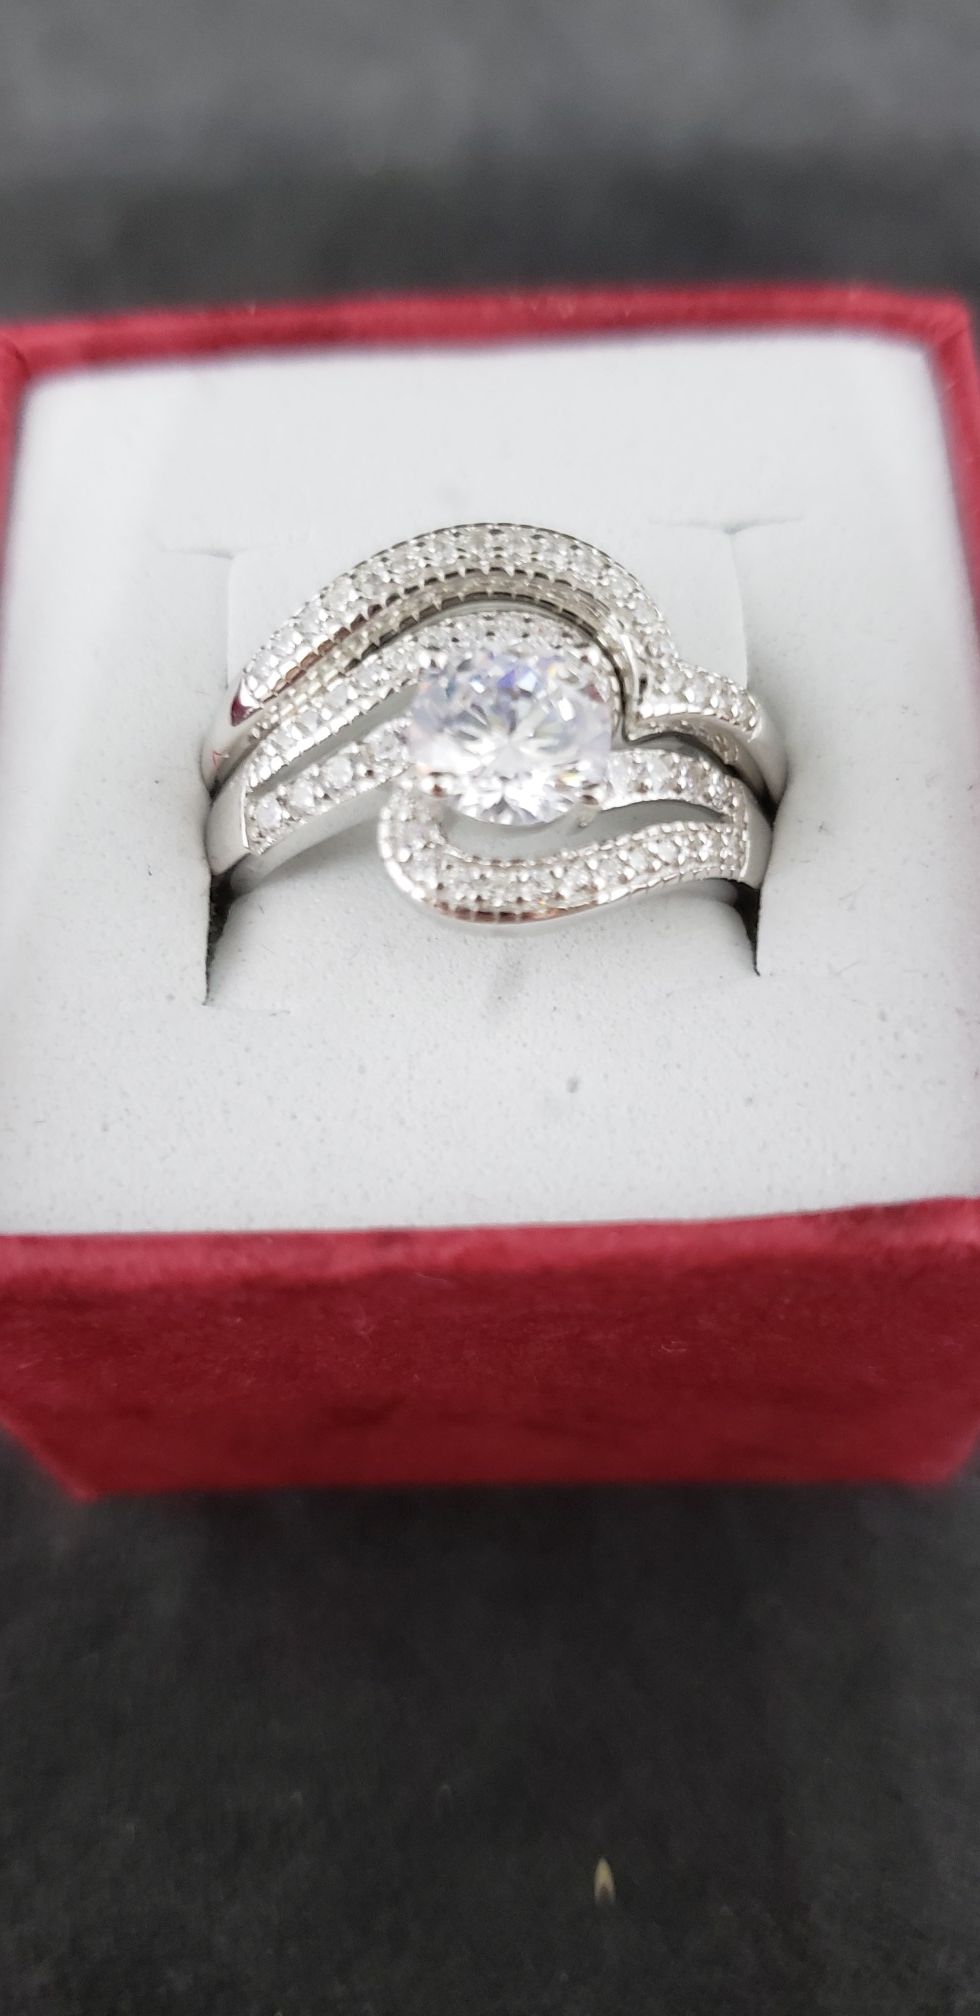 Beautiful wedding ring set